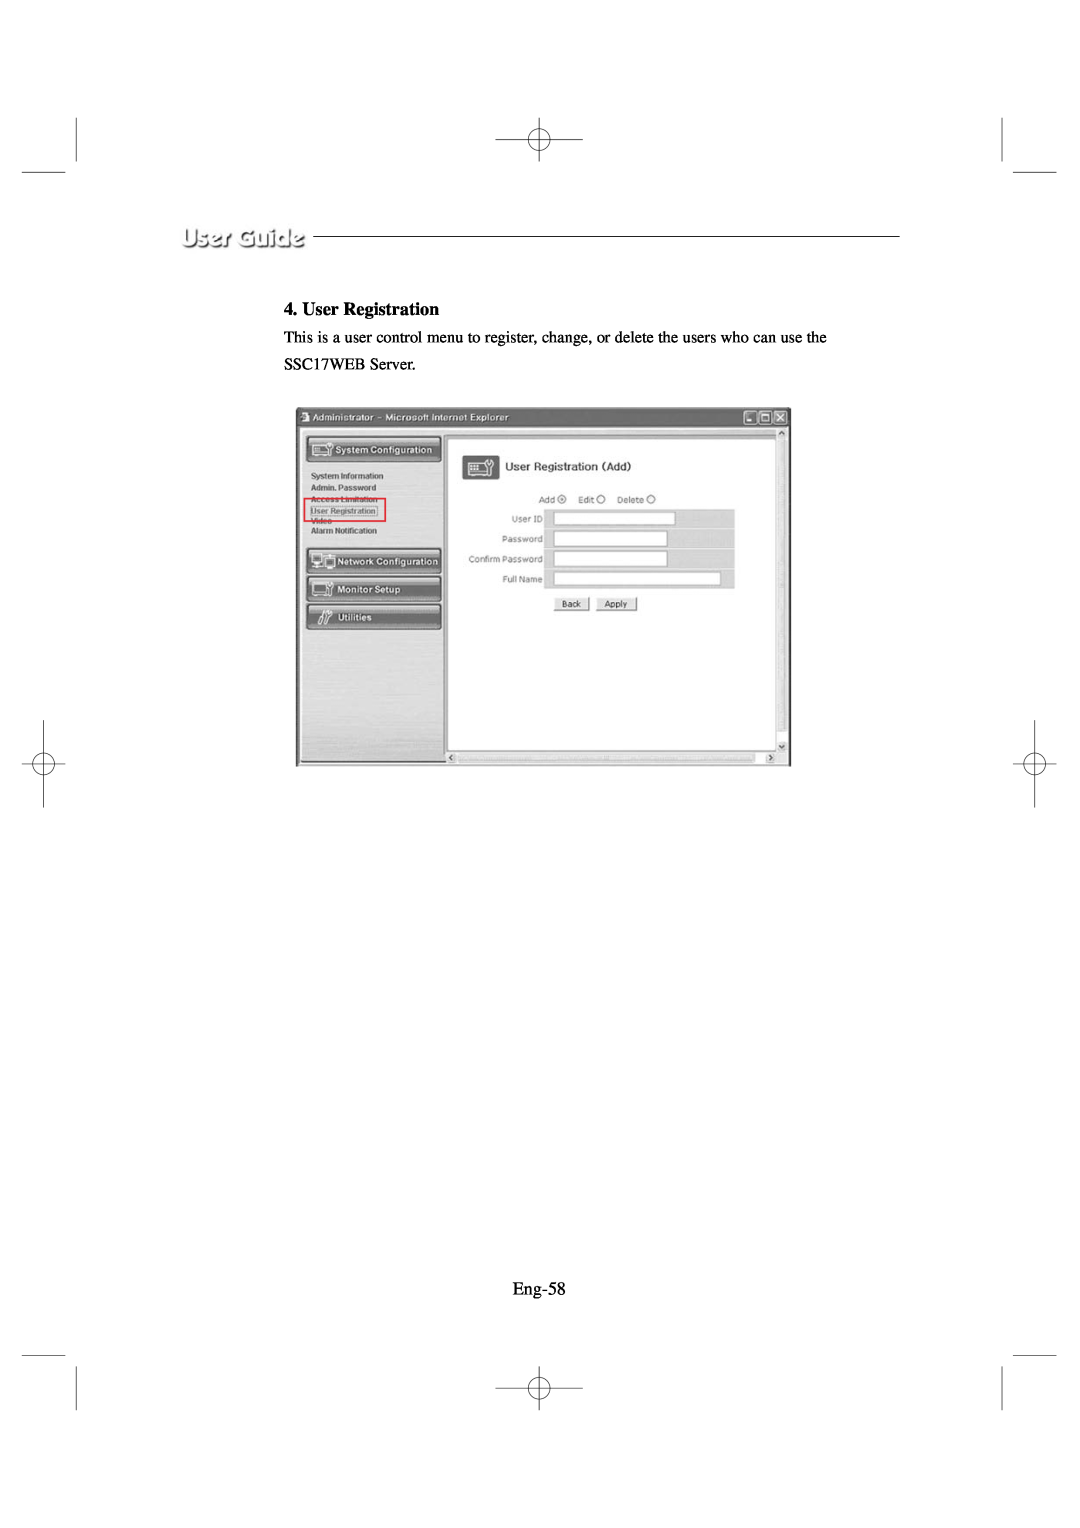 Samsung SSC17WEB manual User Registration, Eng-58 